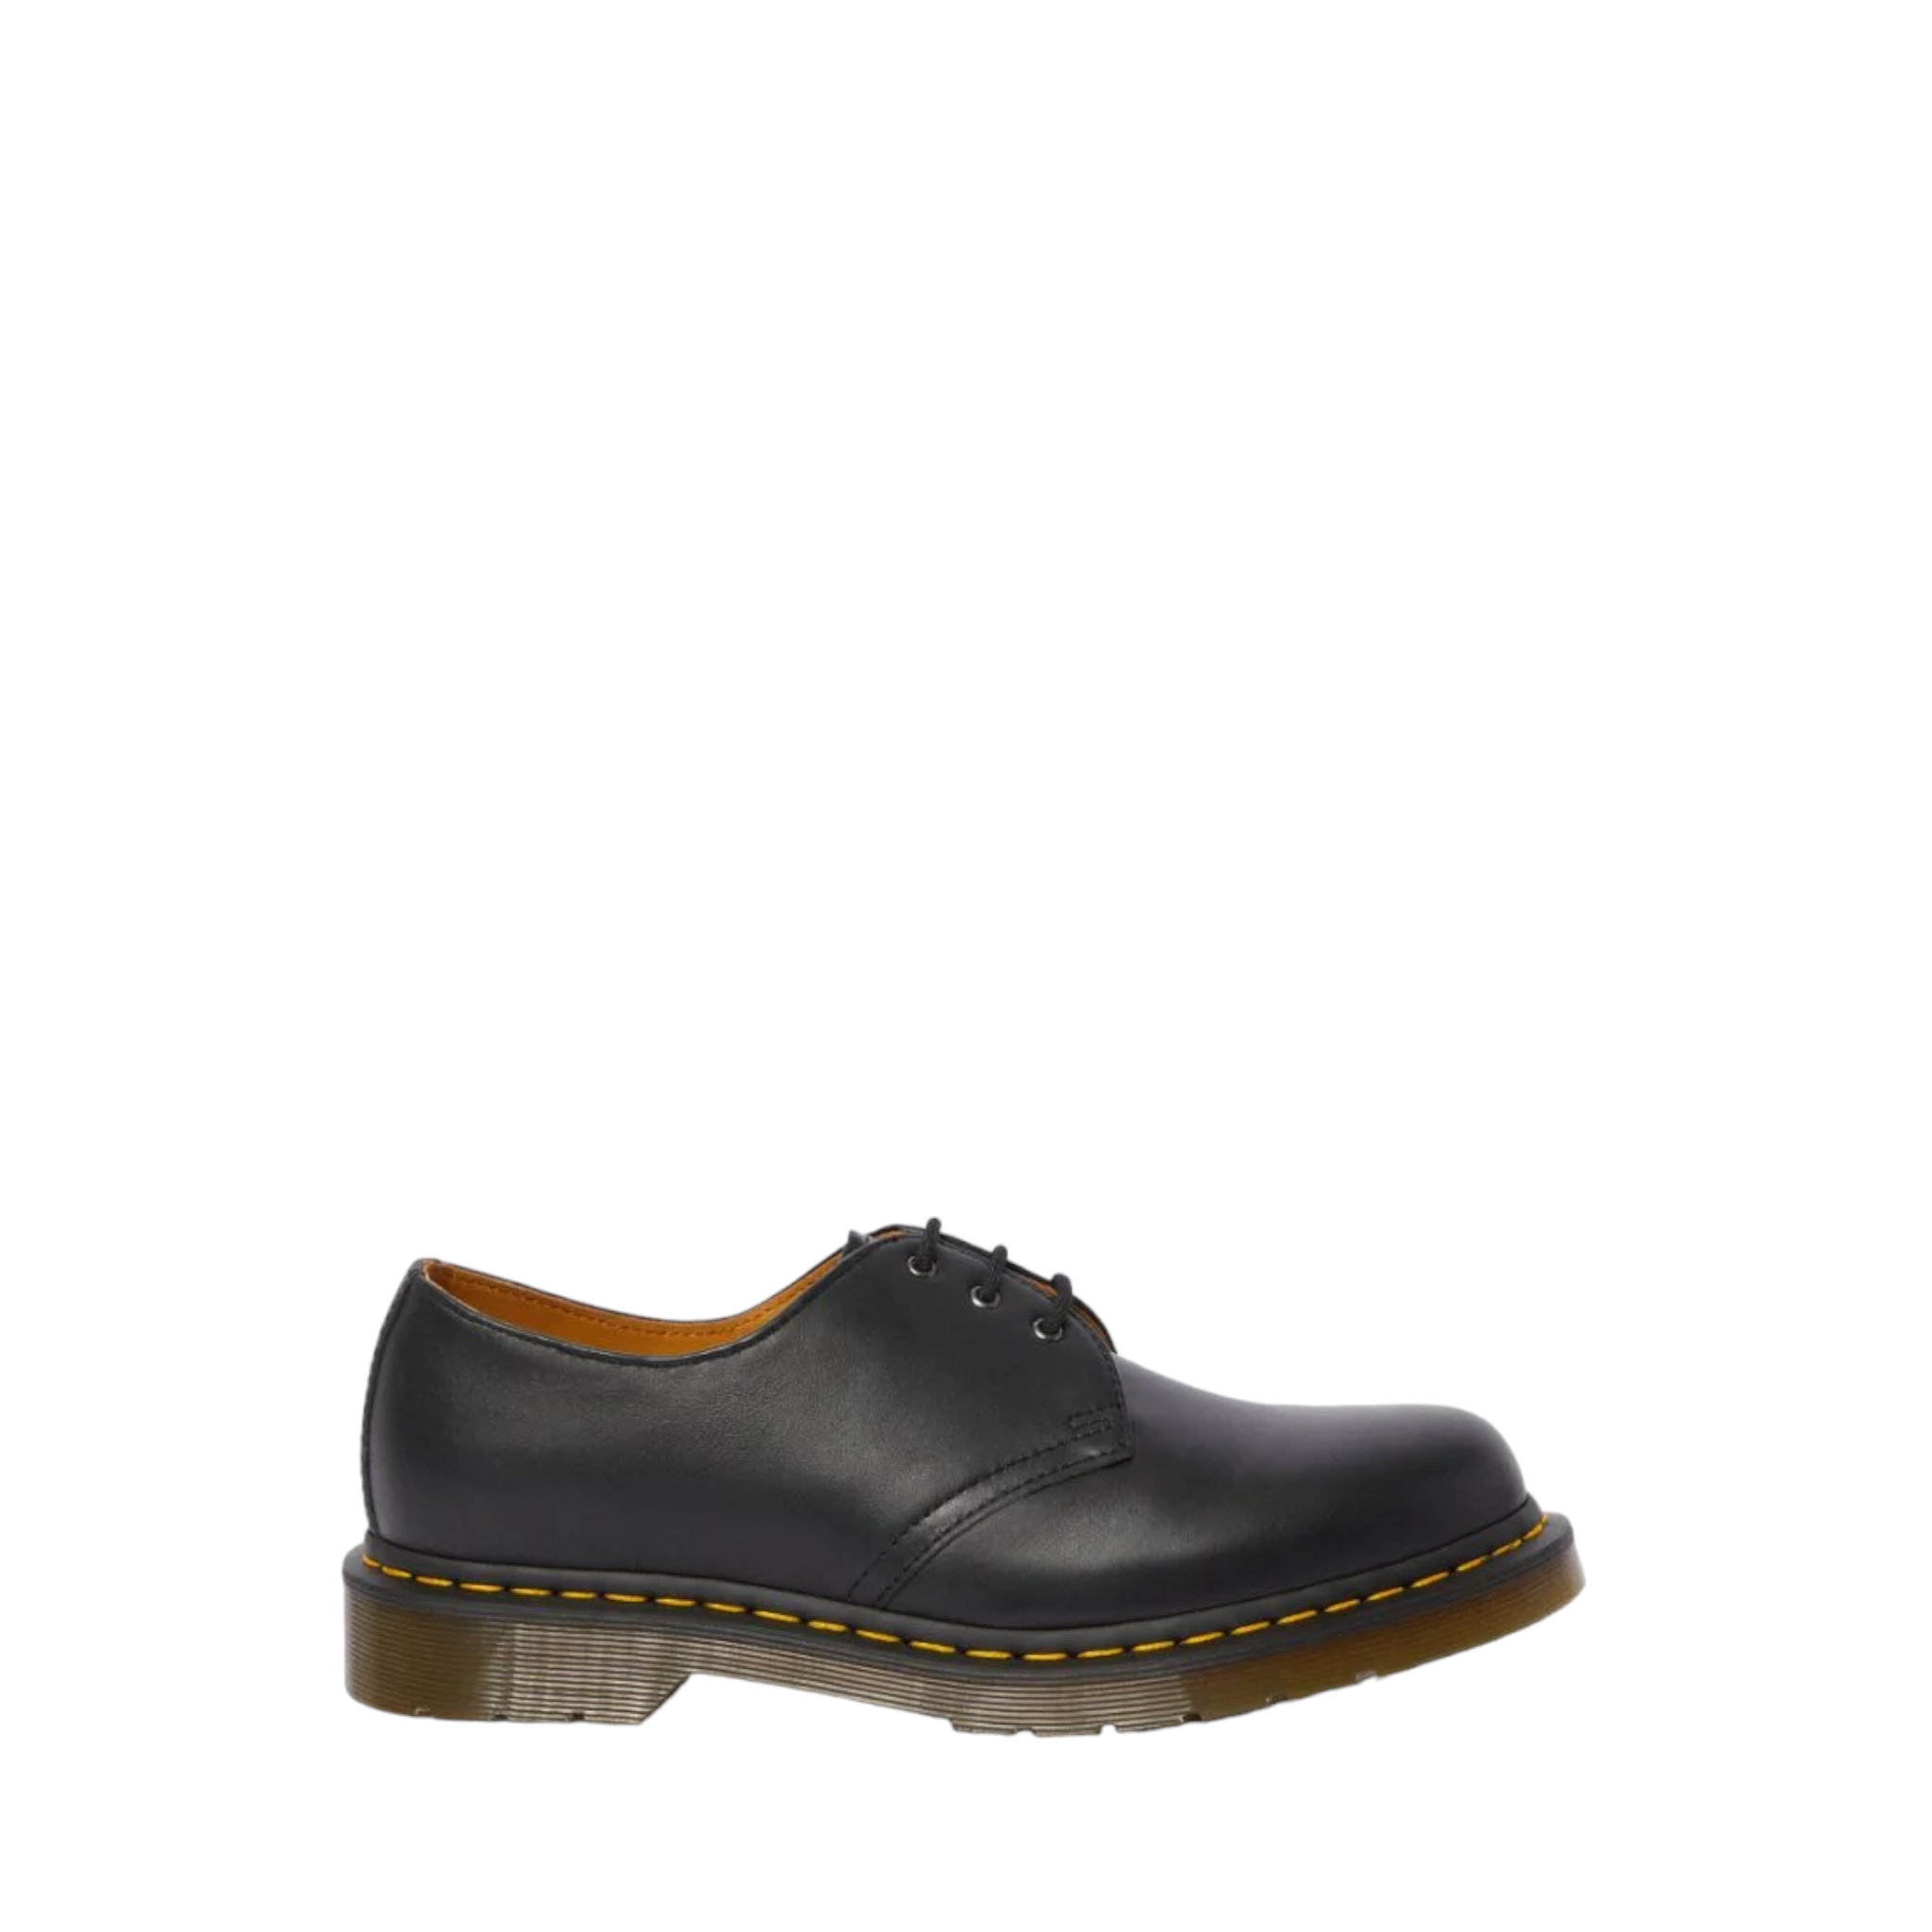 1461 - shoe&me - Dr. Martens - Shoes - Mens, Shoe, Unisex, Womens